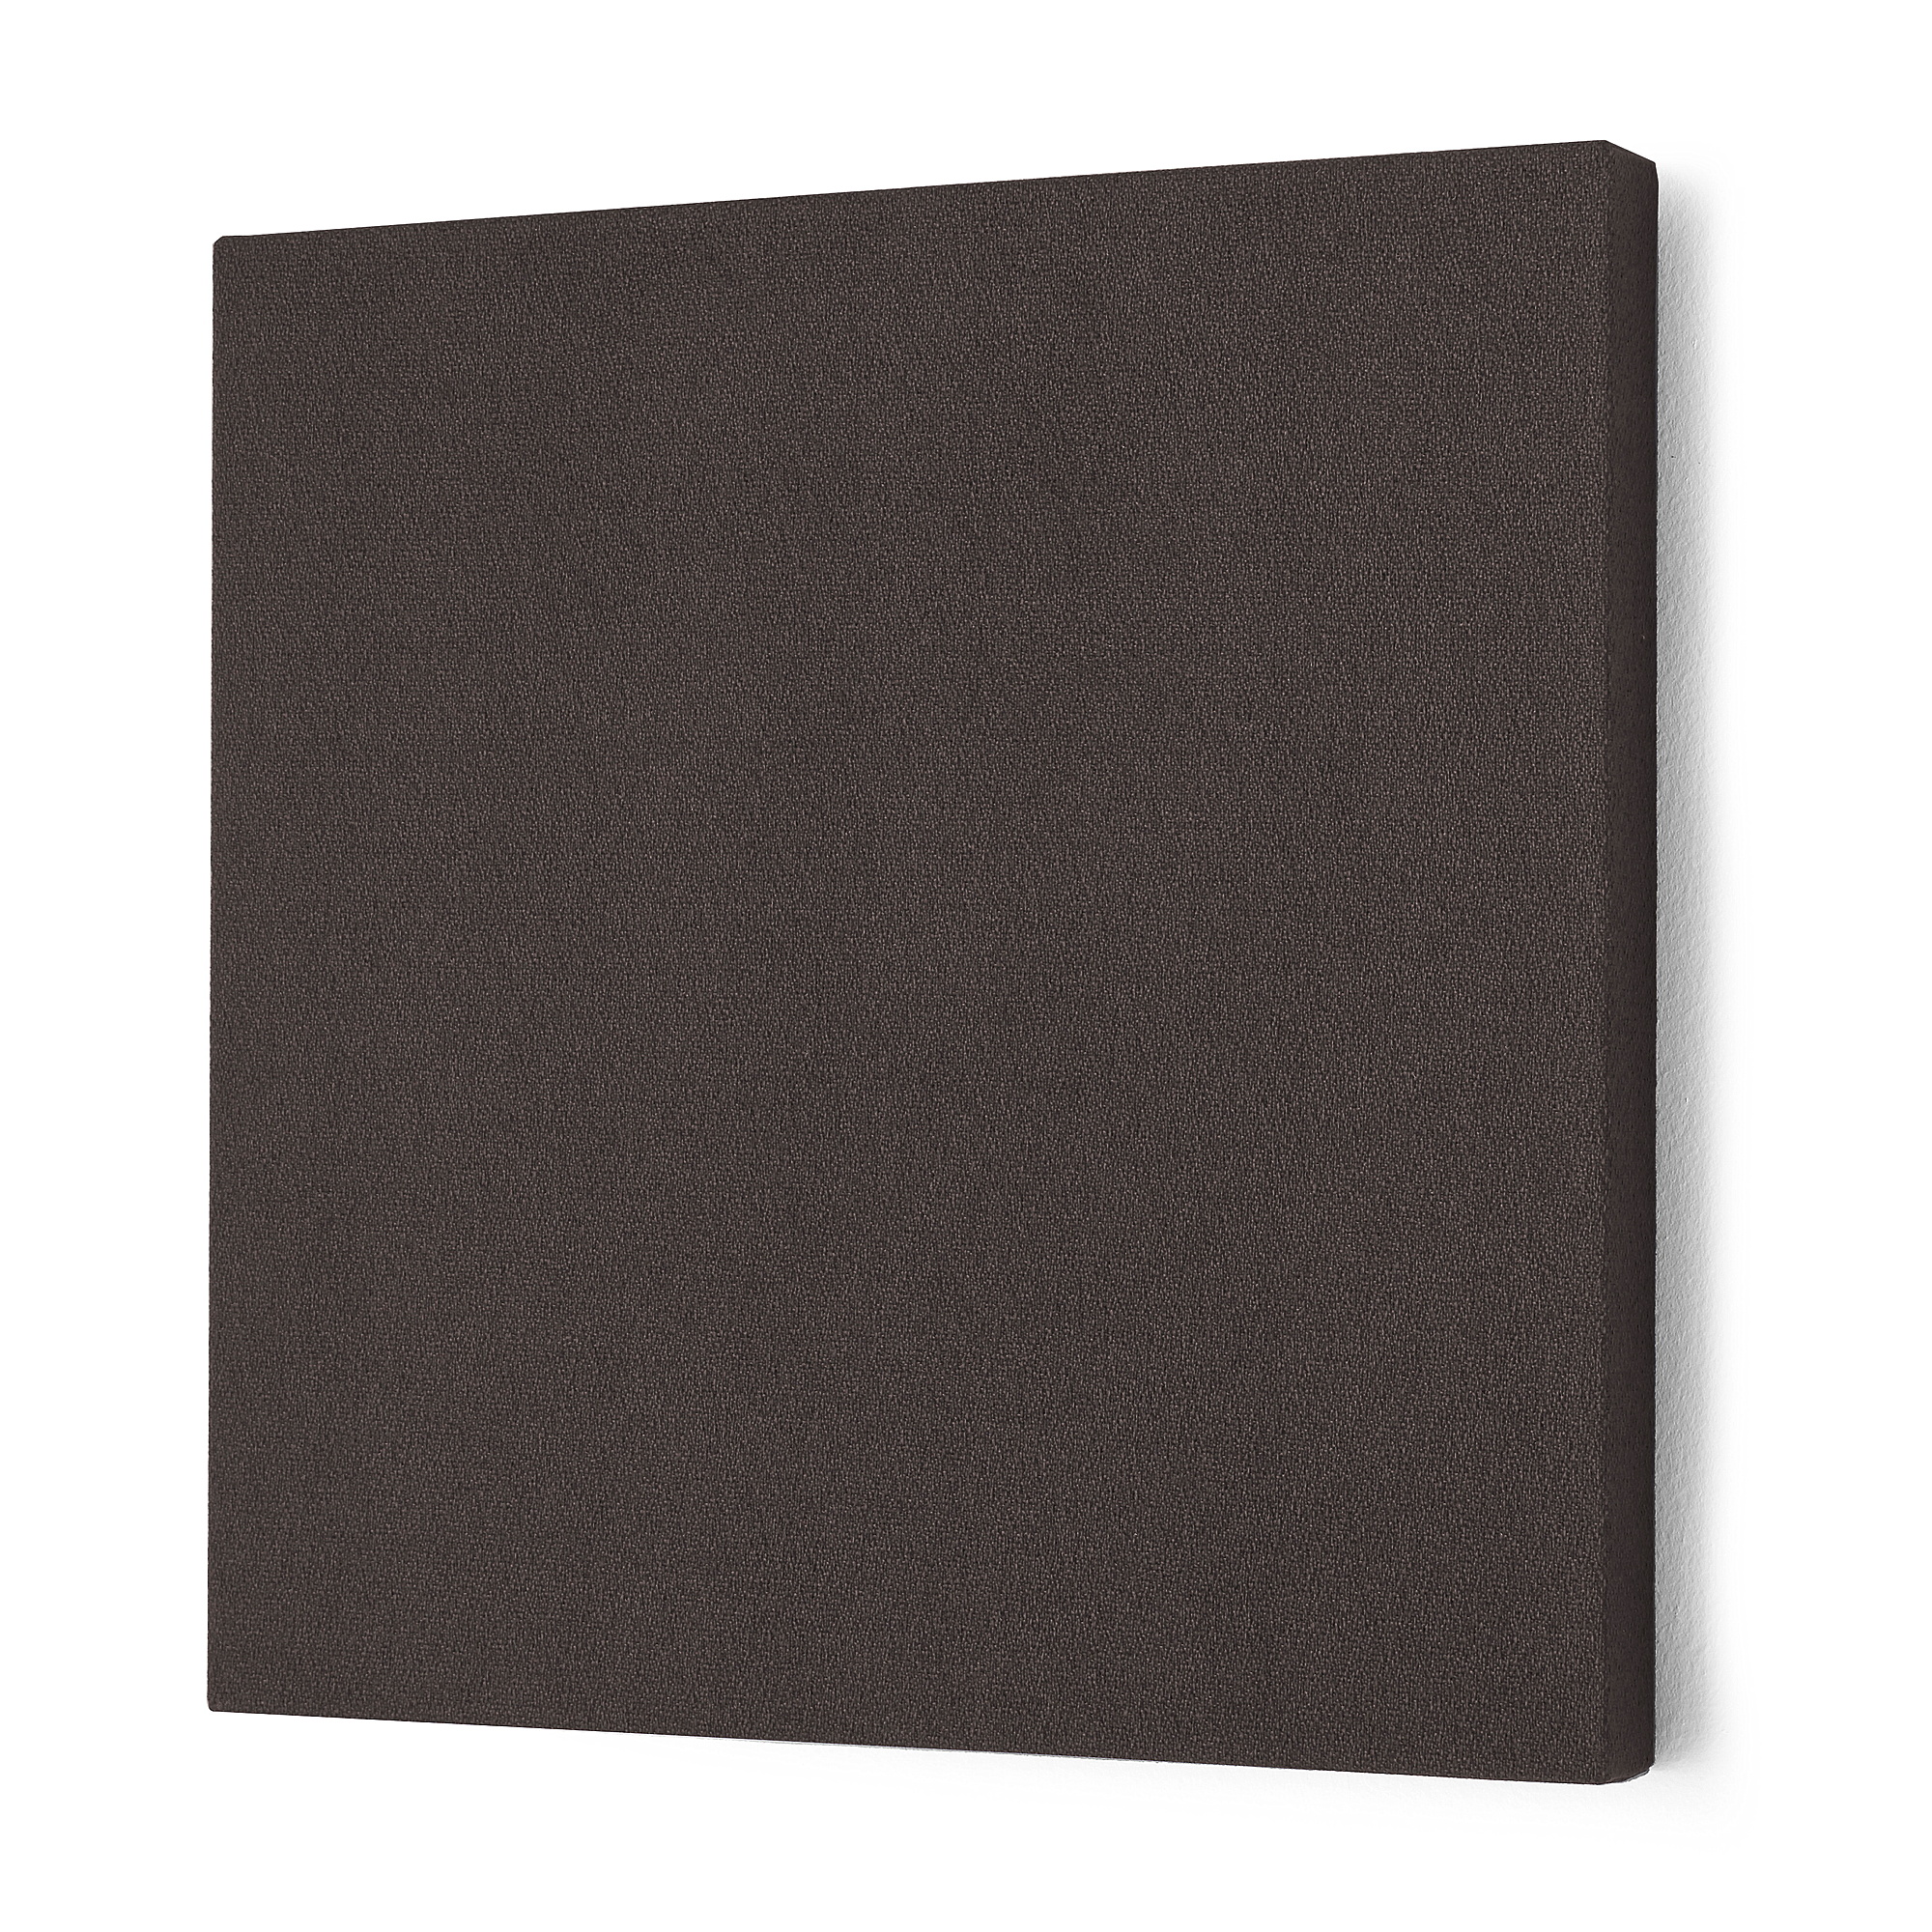 Akustický panel POLY, čtverec, 600x600x56 mm, tmavě šedý